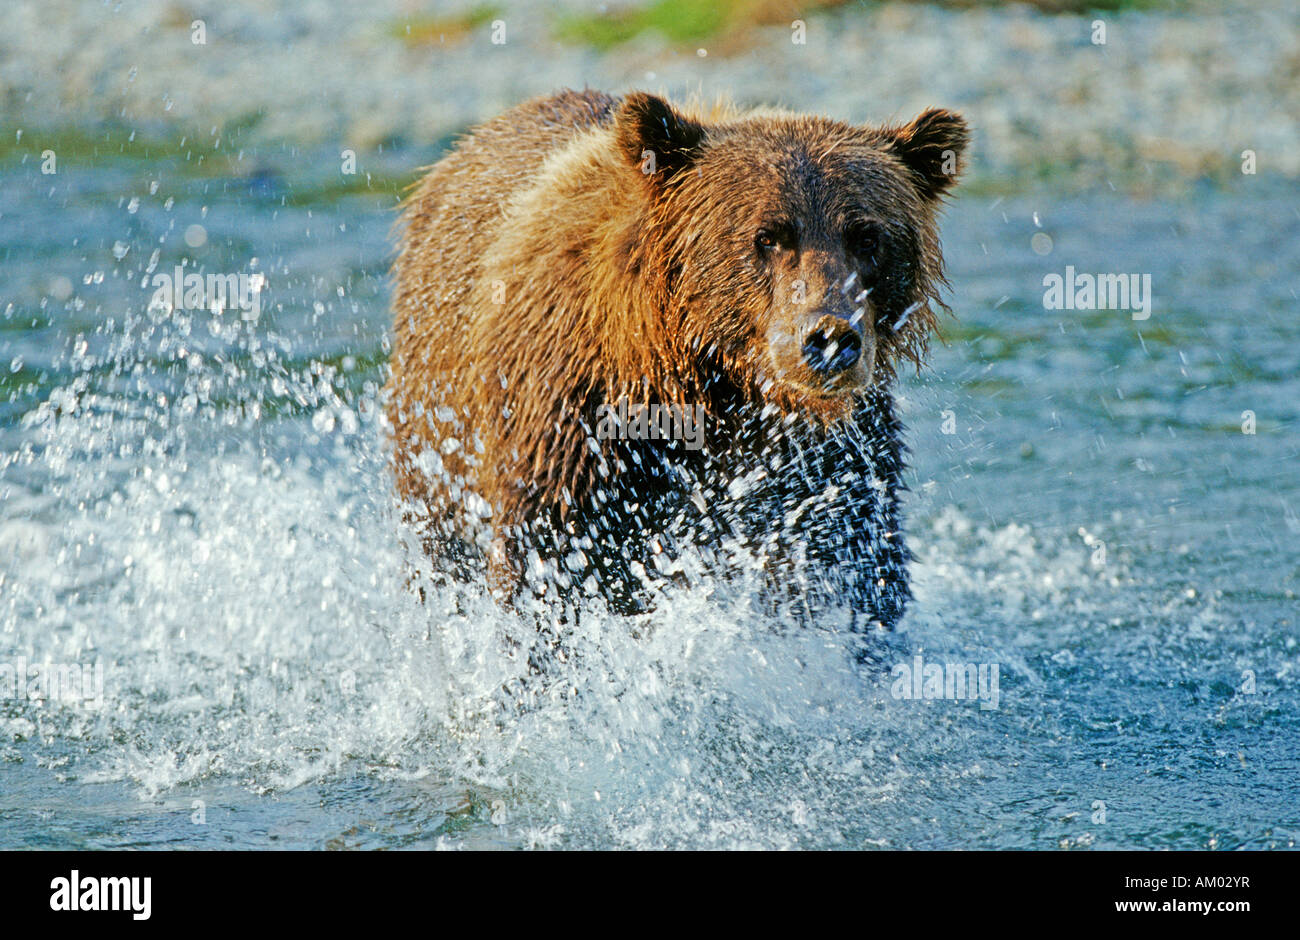 Brown bear (Ursus arctos) catching salmons, Katmai National Park, Alaska Stock Photo